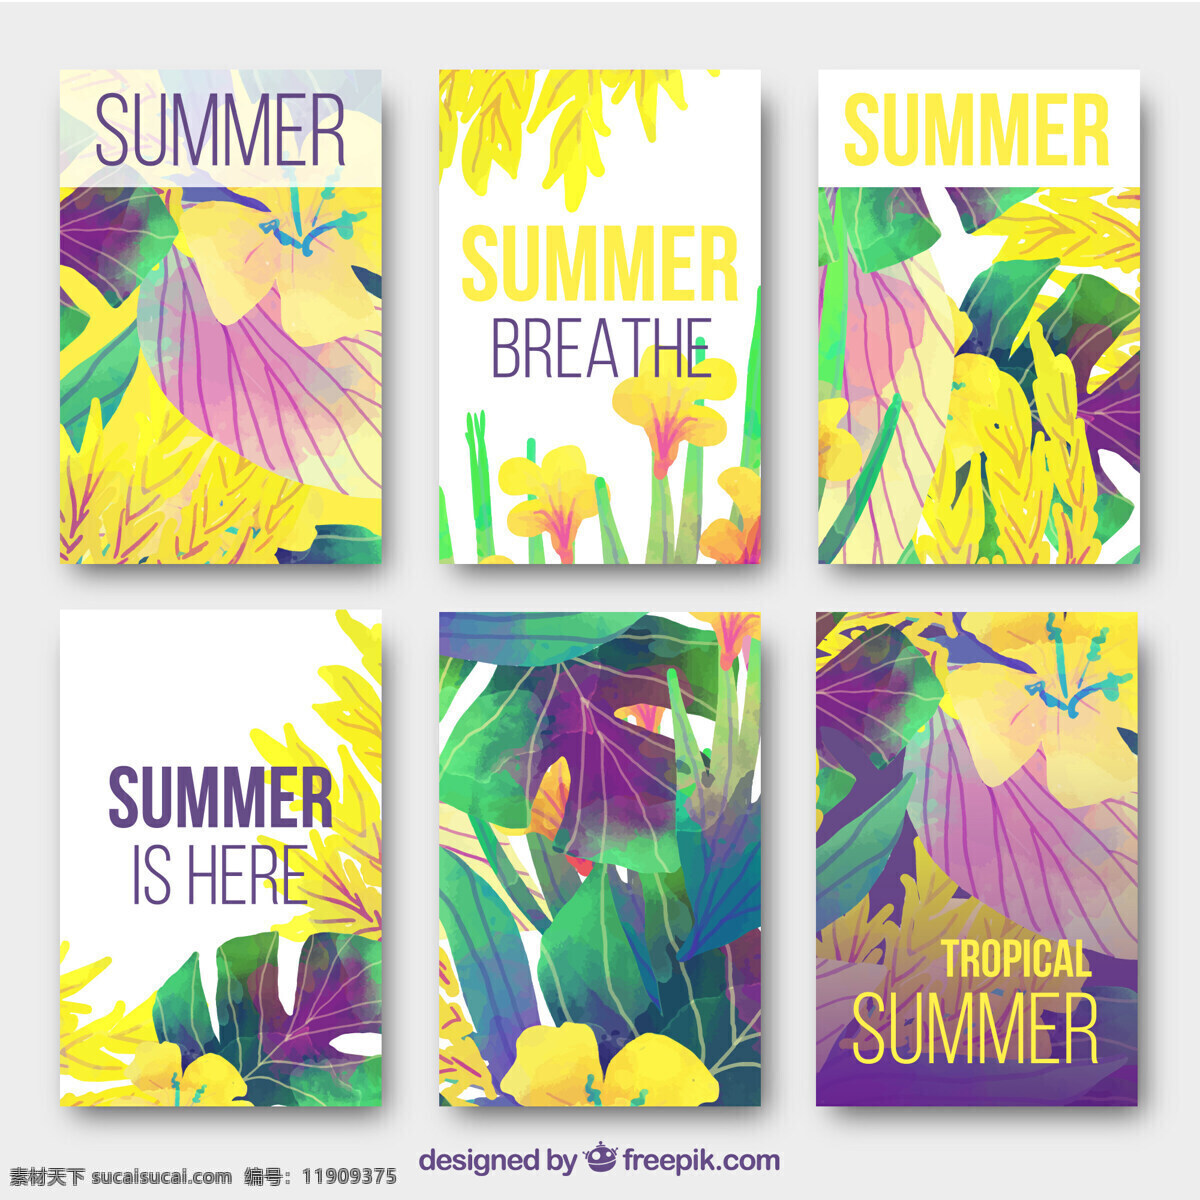 缤纷 热带 夏季 卡片 收藏 花卉 树 水 夏天 树叶 自然 海洋 海滩 阳光 色彩 假日 五颜六色 植物 水彩画 棕榈树